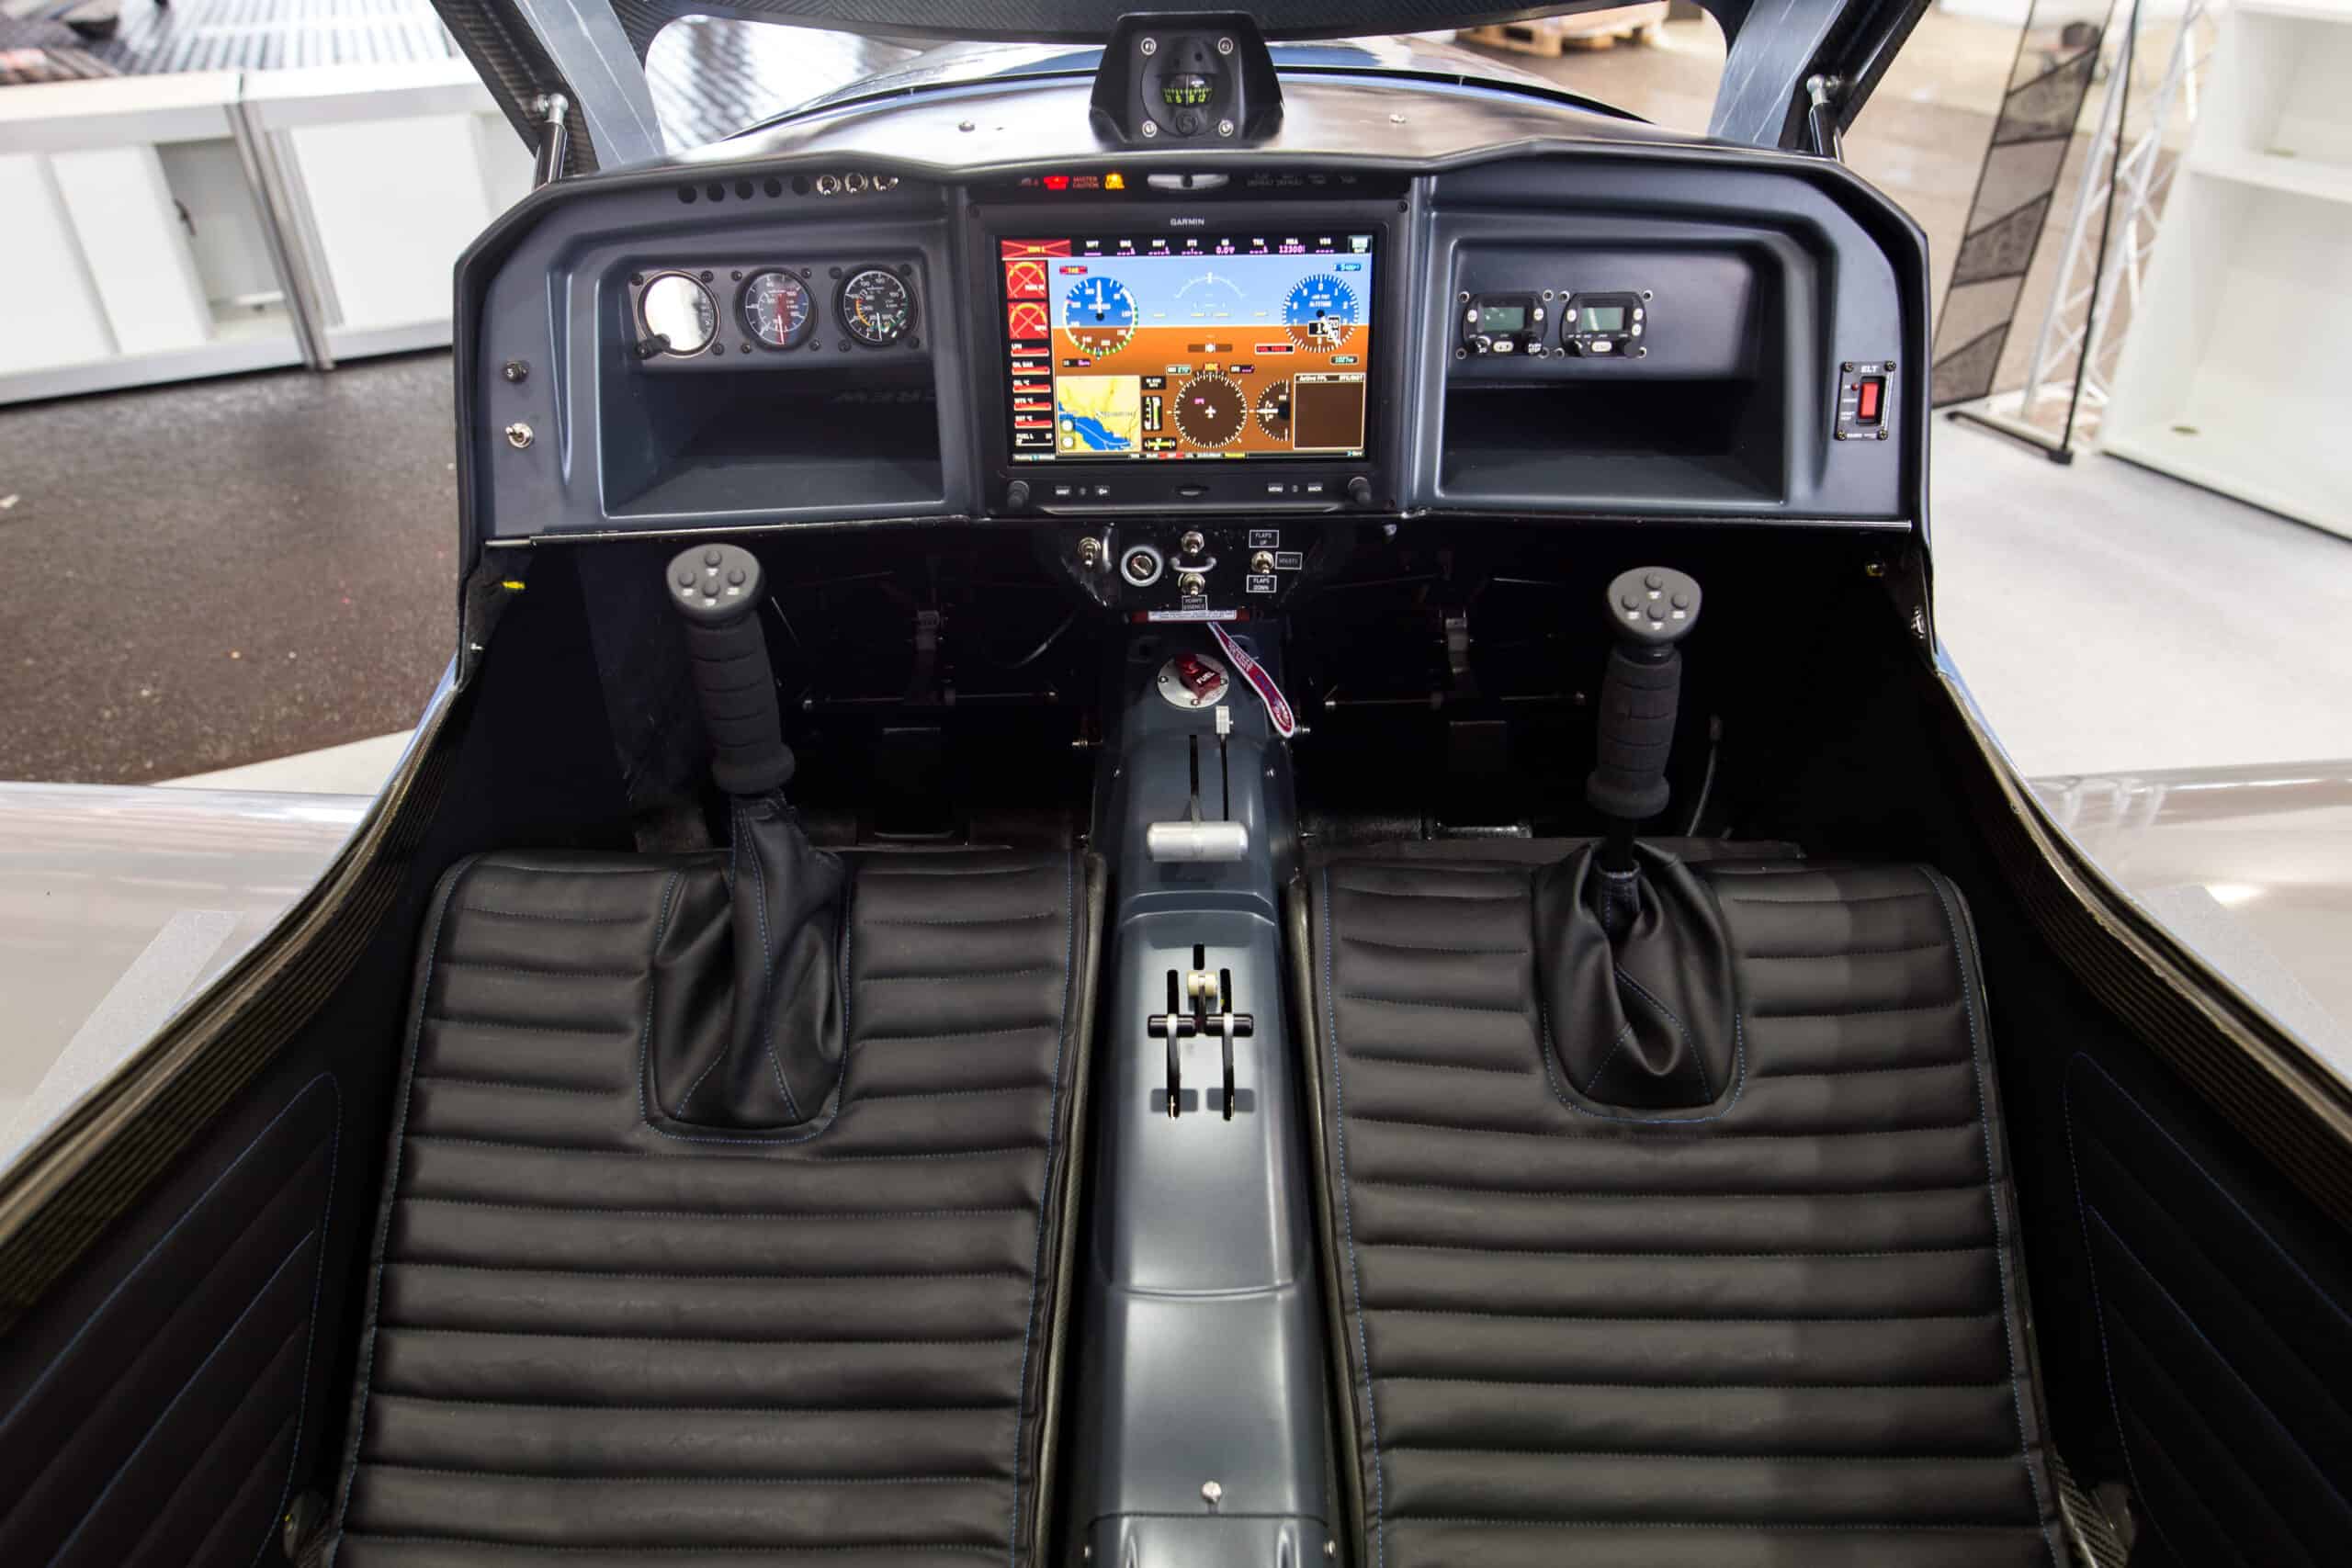 Le cockpit de l'Elixir a été dessiné en collaboration avec des professionnels de l'automobile. Sa simplicité vient du Garmin G3X en position centrale.